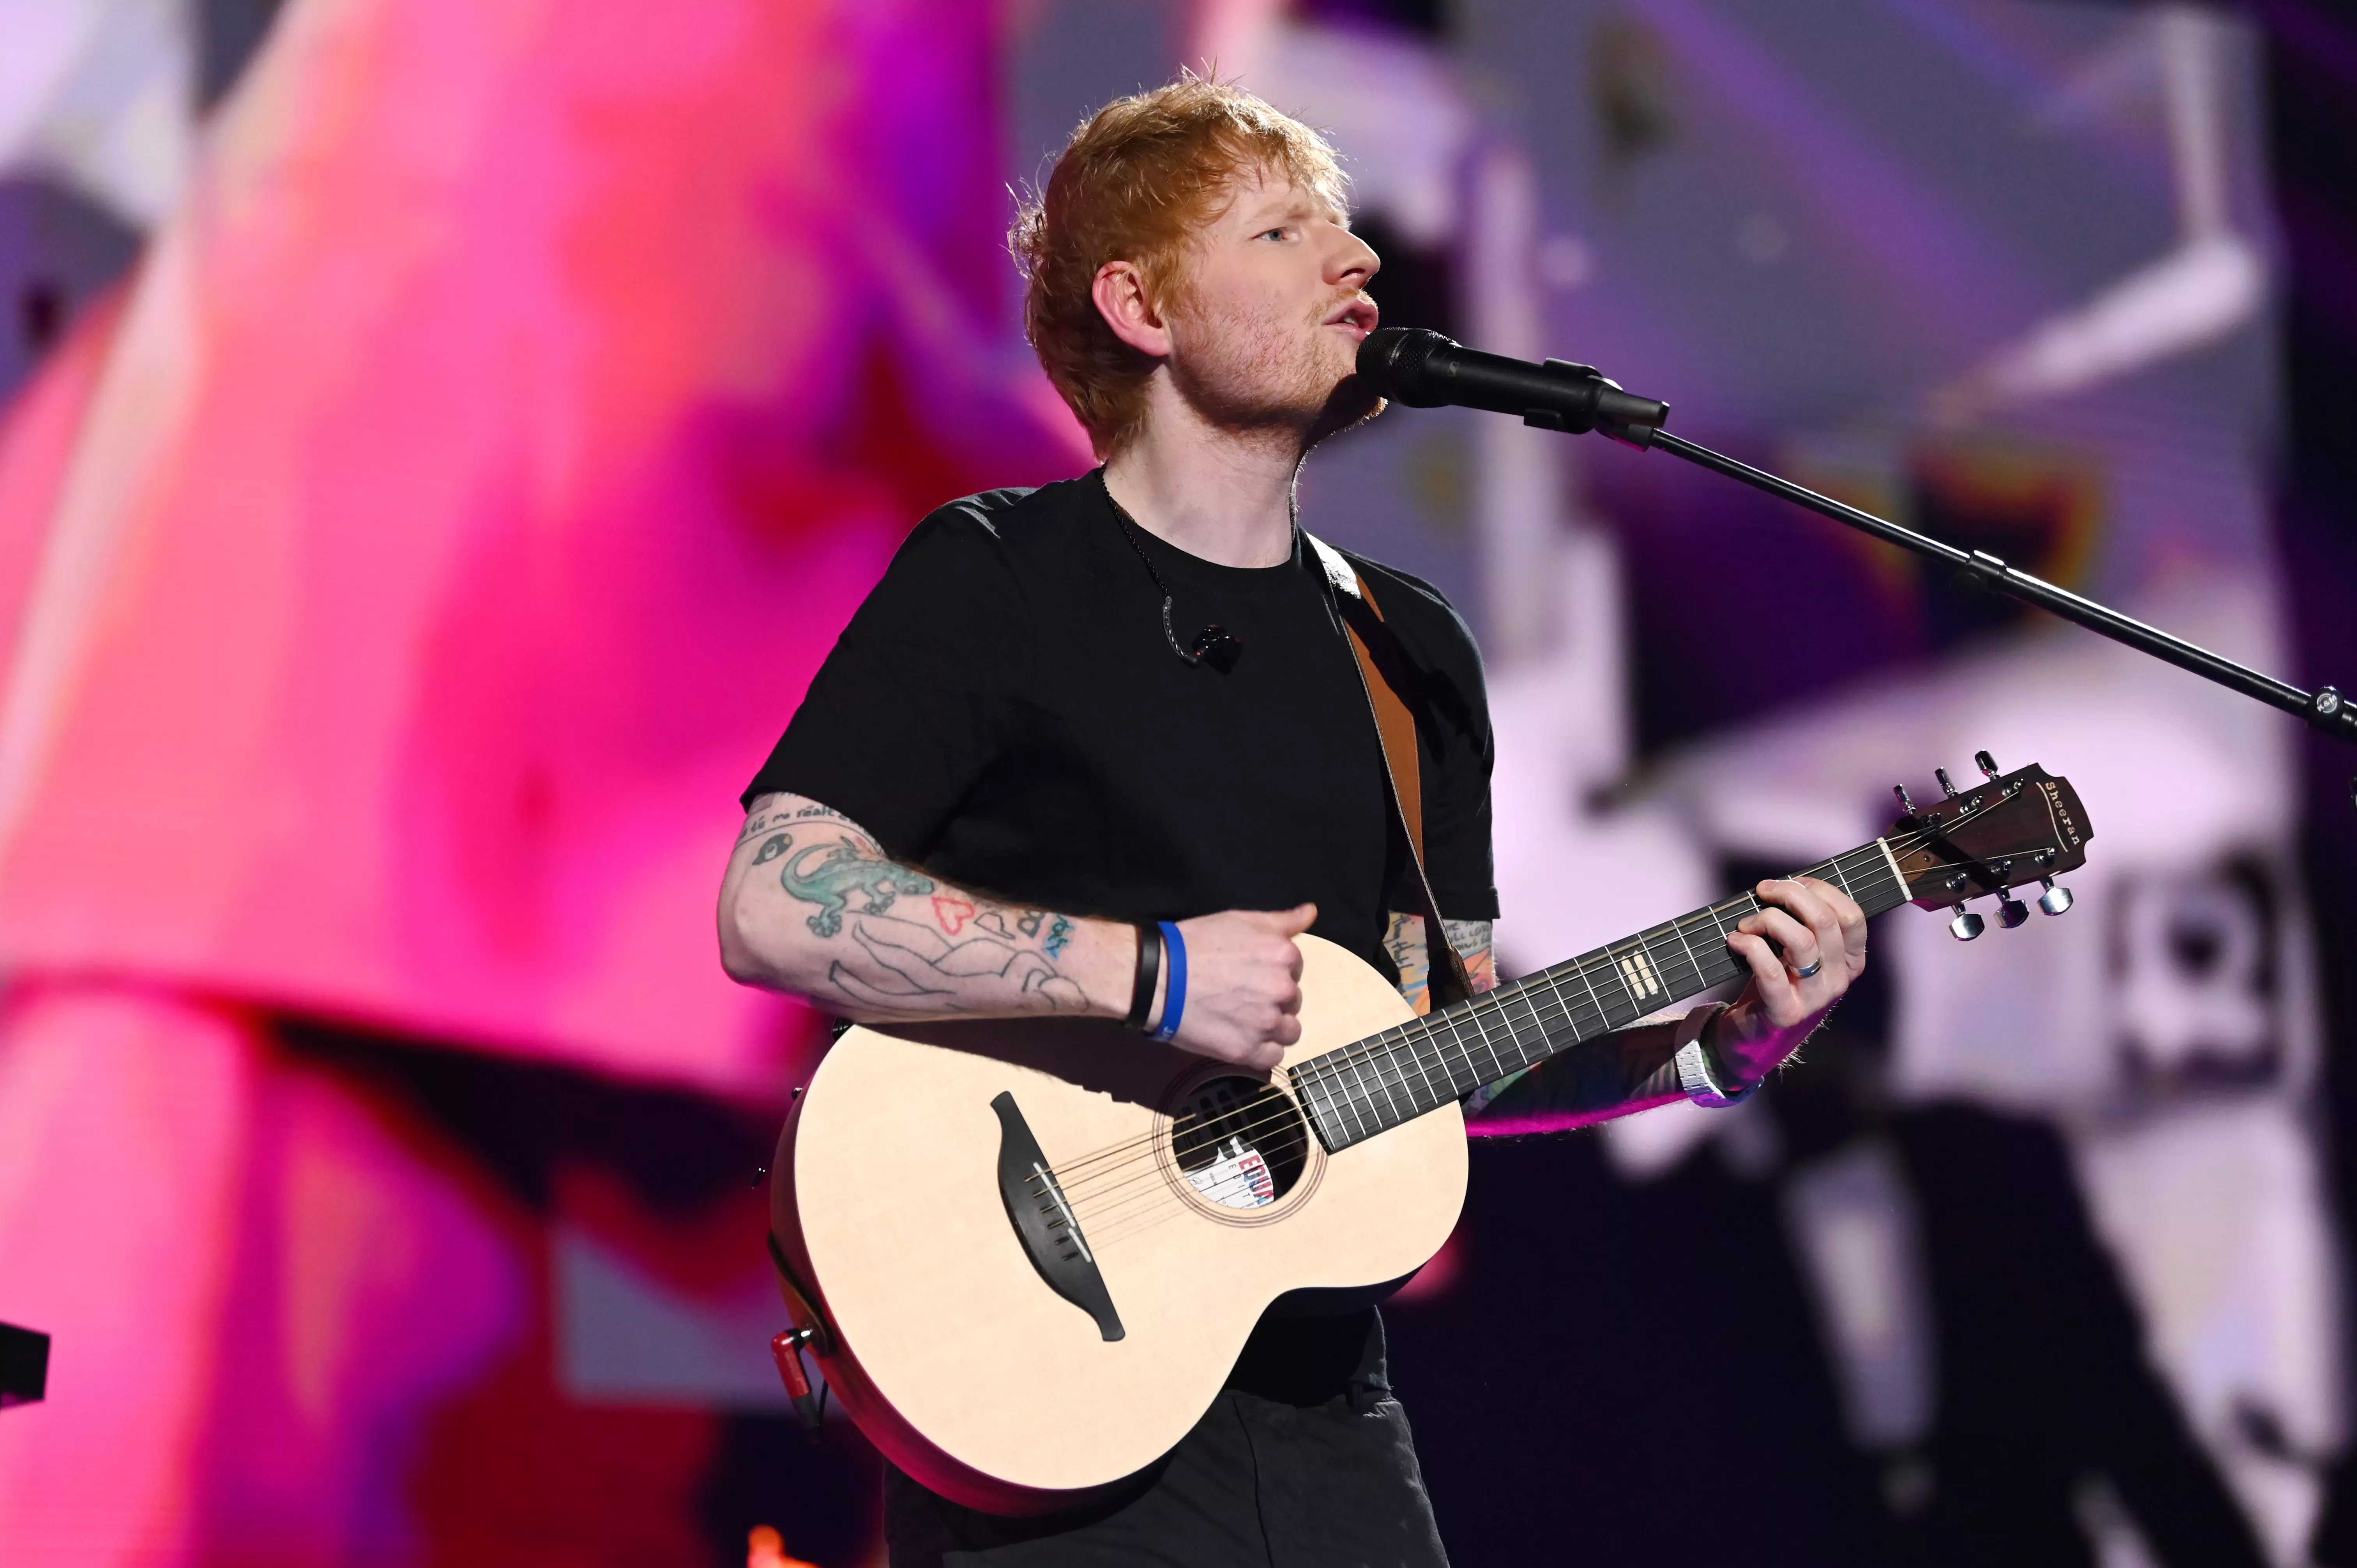 Ed Sheeran gana la demanda por derechos de autor de 'Shape of You': 'La coincidencia es inevitable' - Nacional | Globalnews.ca